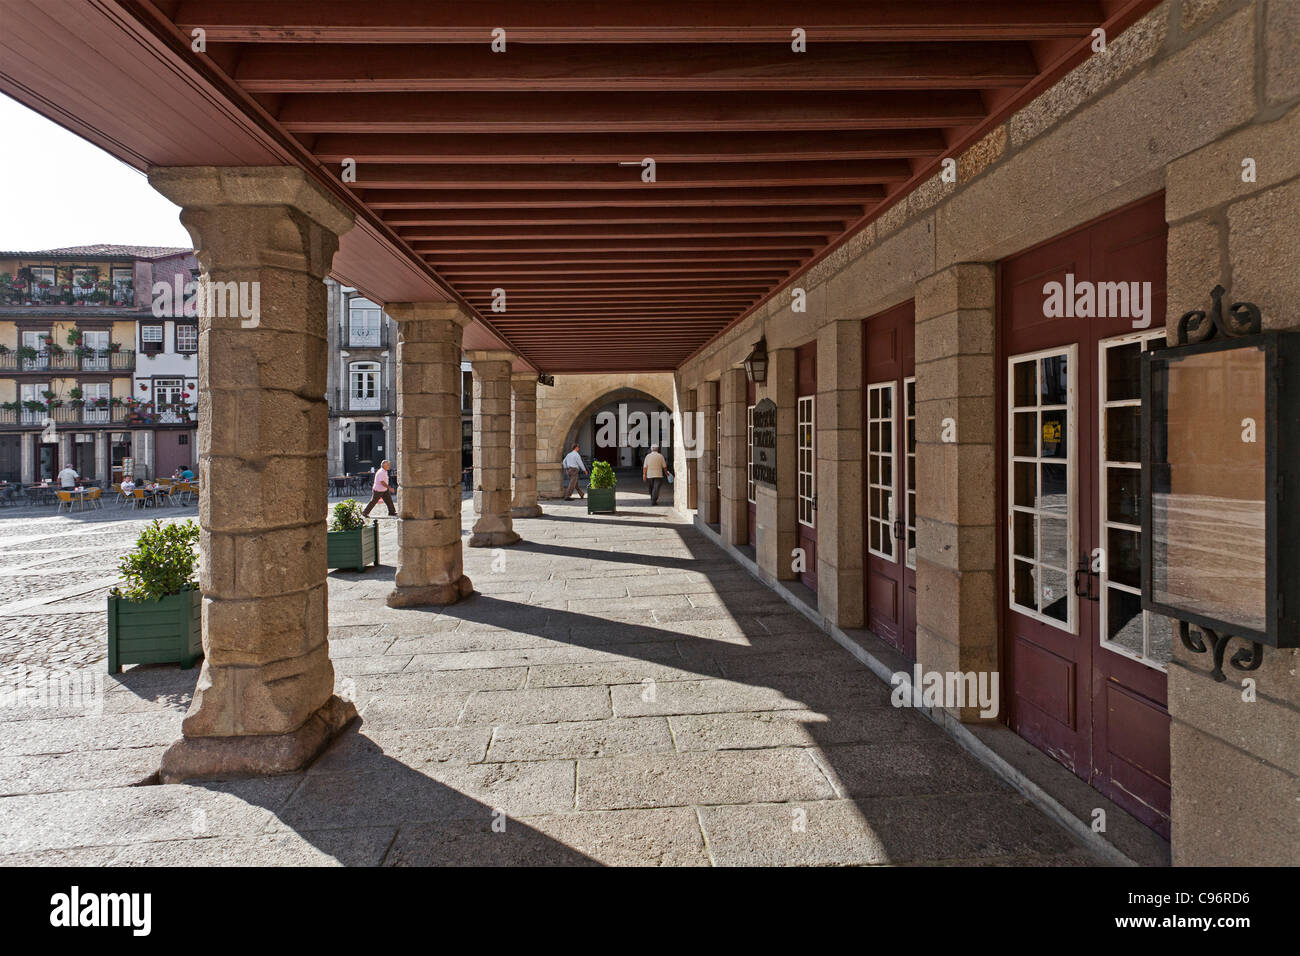 Édifice médiéval colonnade et Oliveira, carrés, Guimares au Portugal. Unesco world heritage site. Banque D'Images